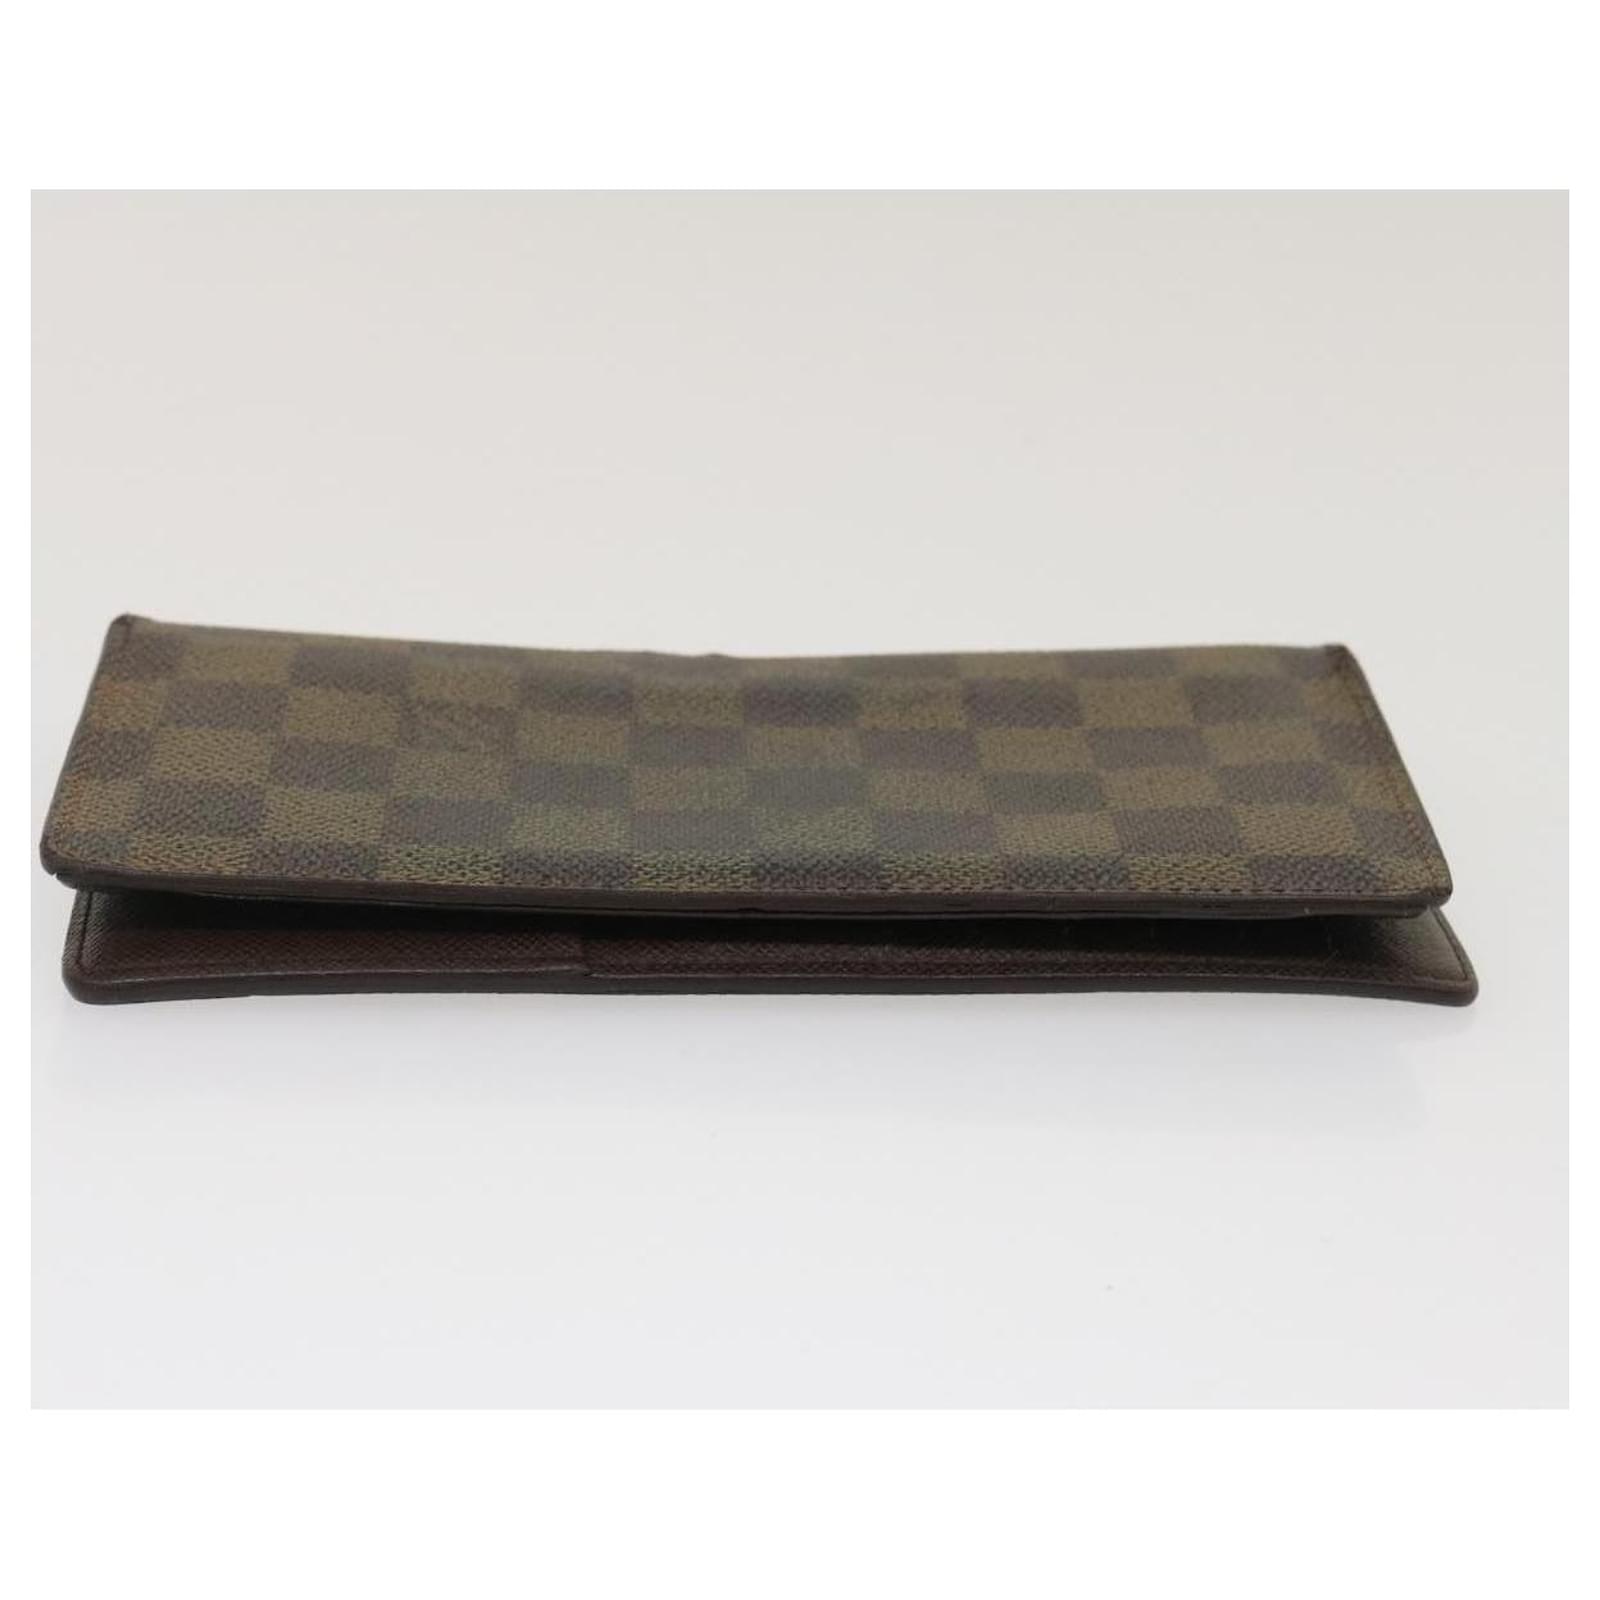 Louis Vuitton Wallet N60017  Louis vuitton wallet, Wallet, Brown wallet